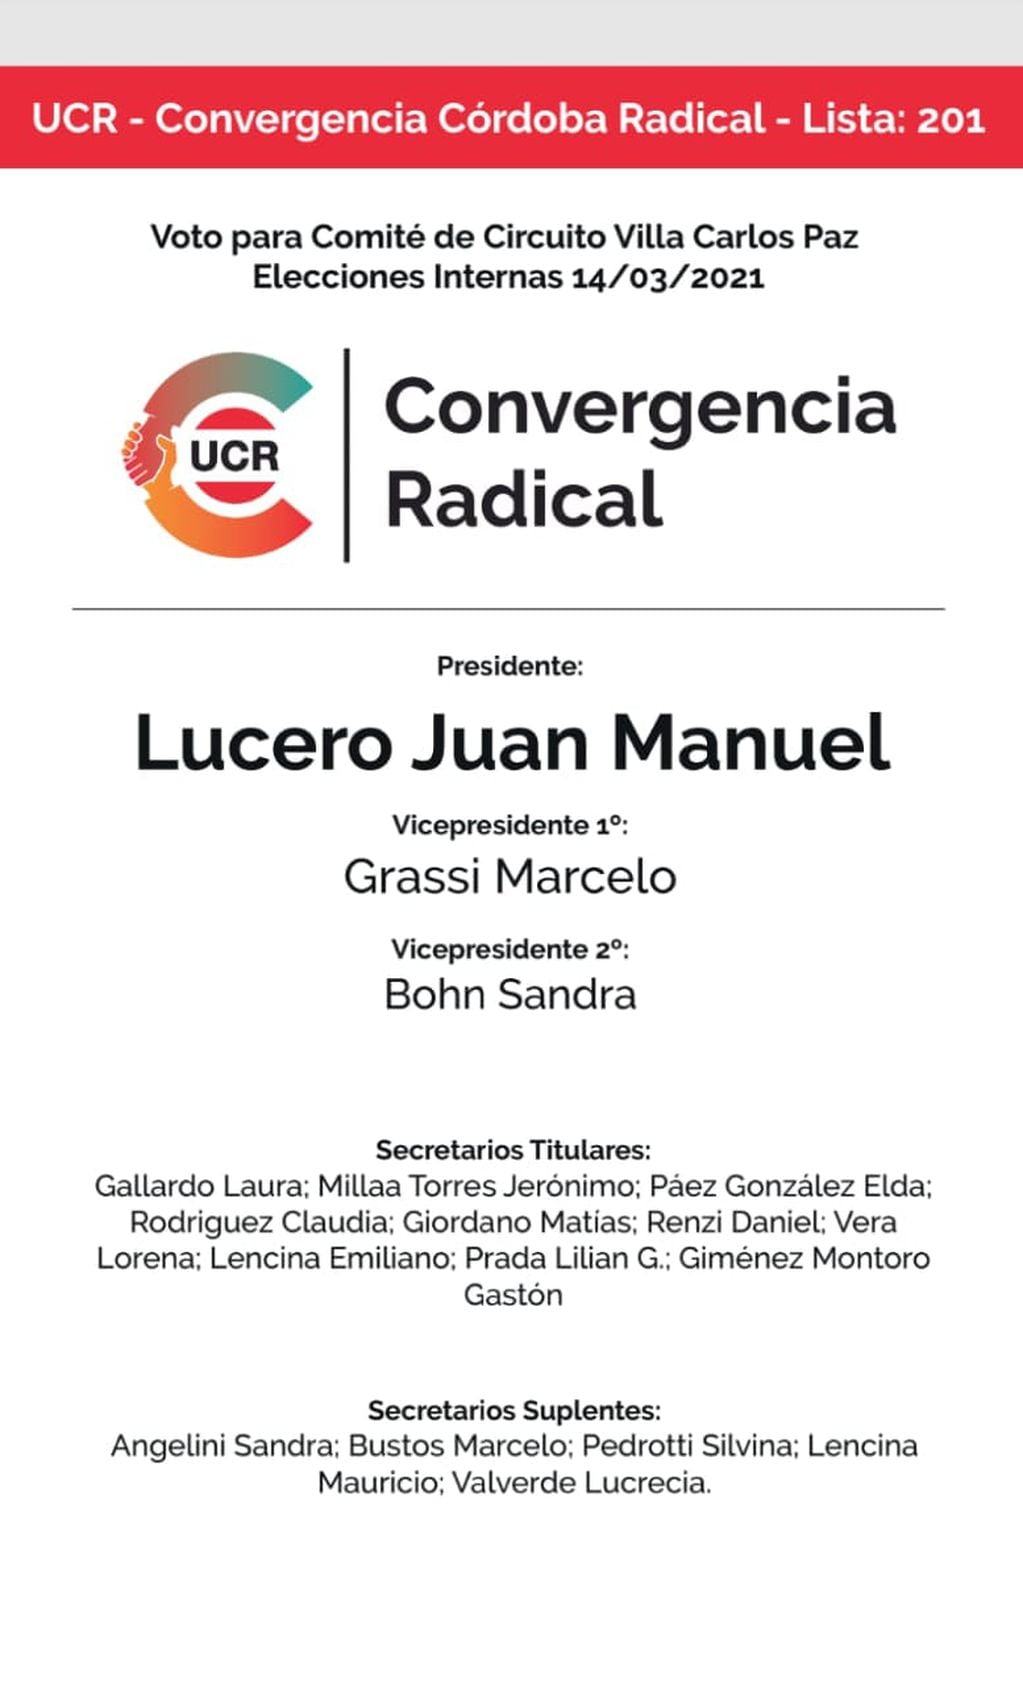 Elecciones internas de la UCR en Villa Carlos Paz. Lista completa liderada por Juan Manuel Lucero.